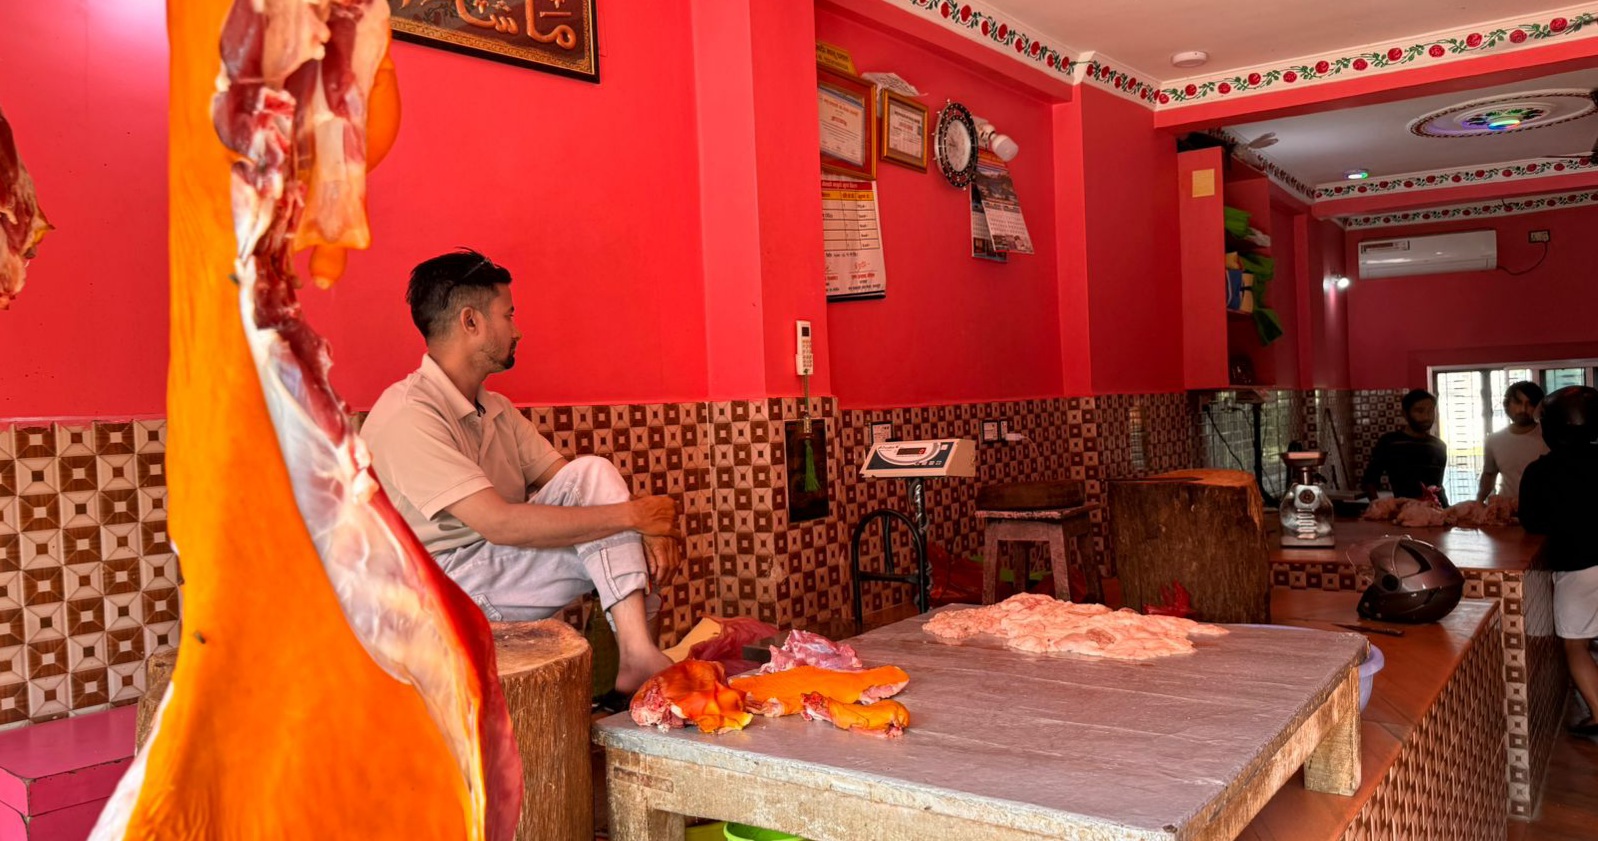 बुटवलमा खसी भनेर बाख्रीको मासु बेच्ने न्यू मेहदी र पप्पु मासु पसललाई जरिवाना